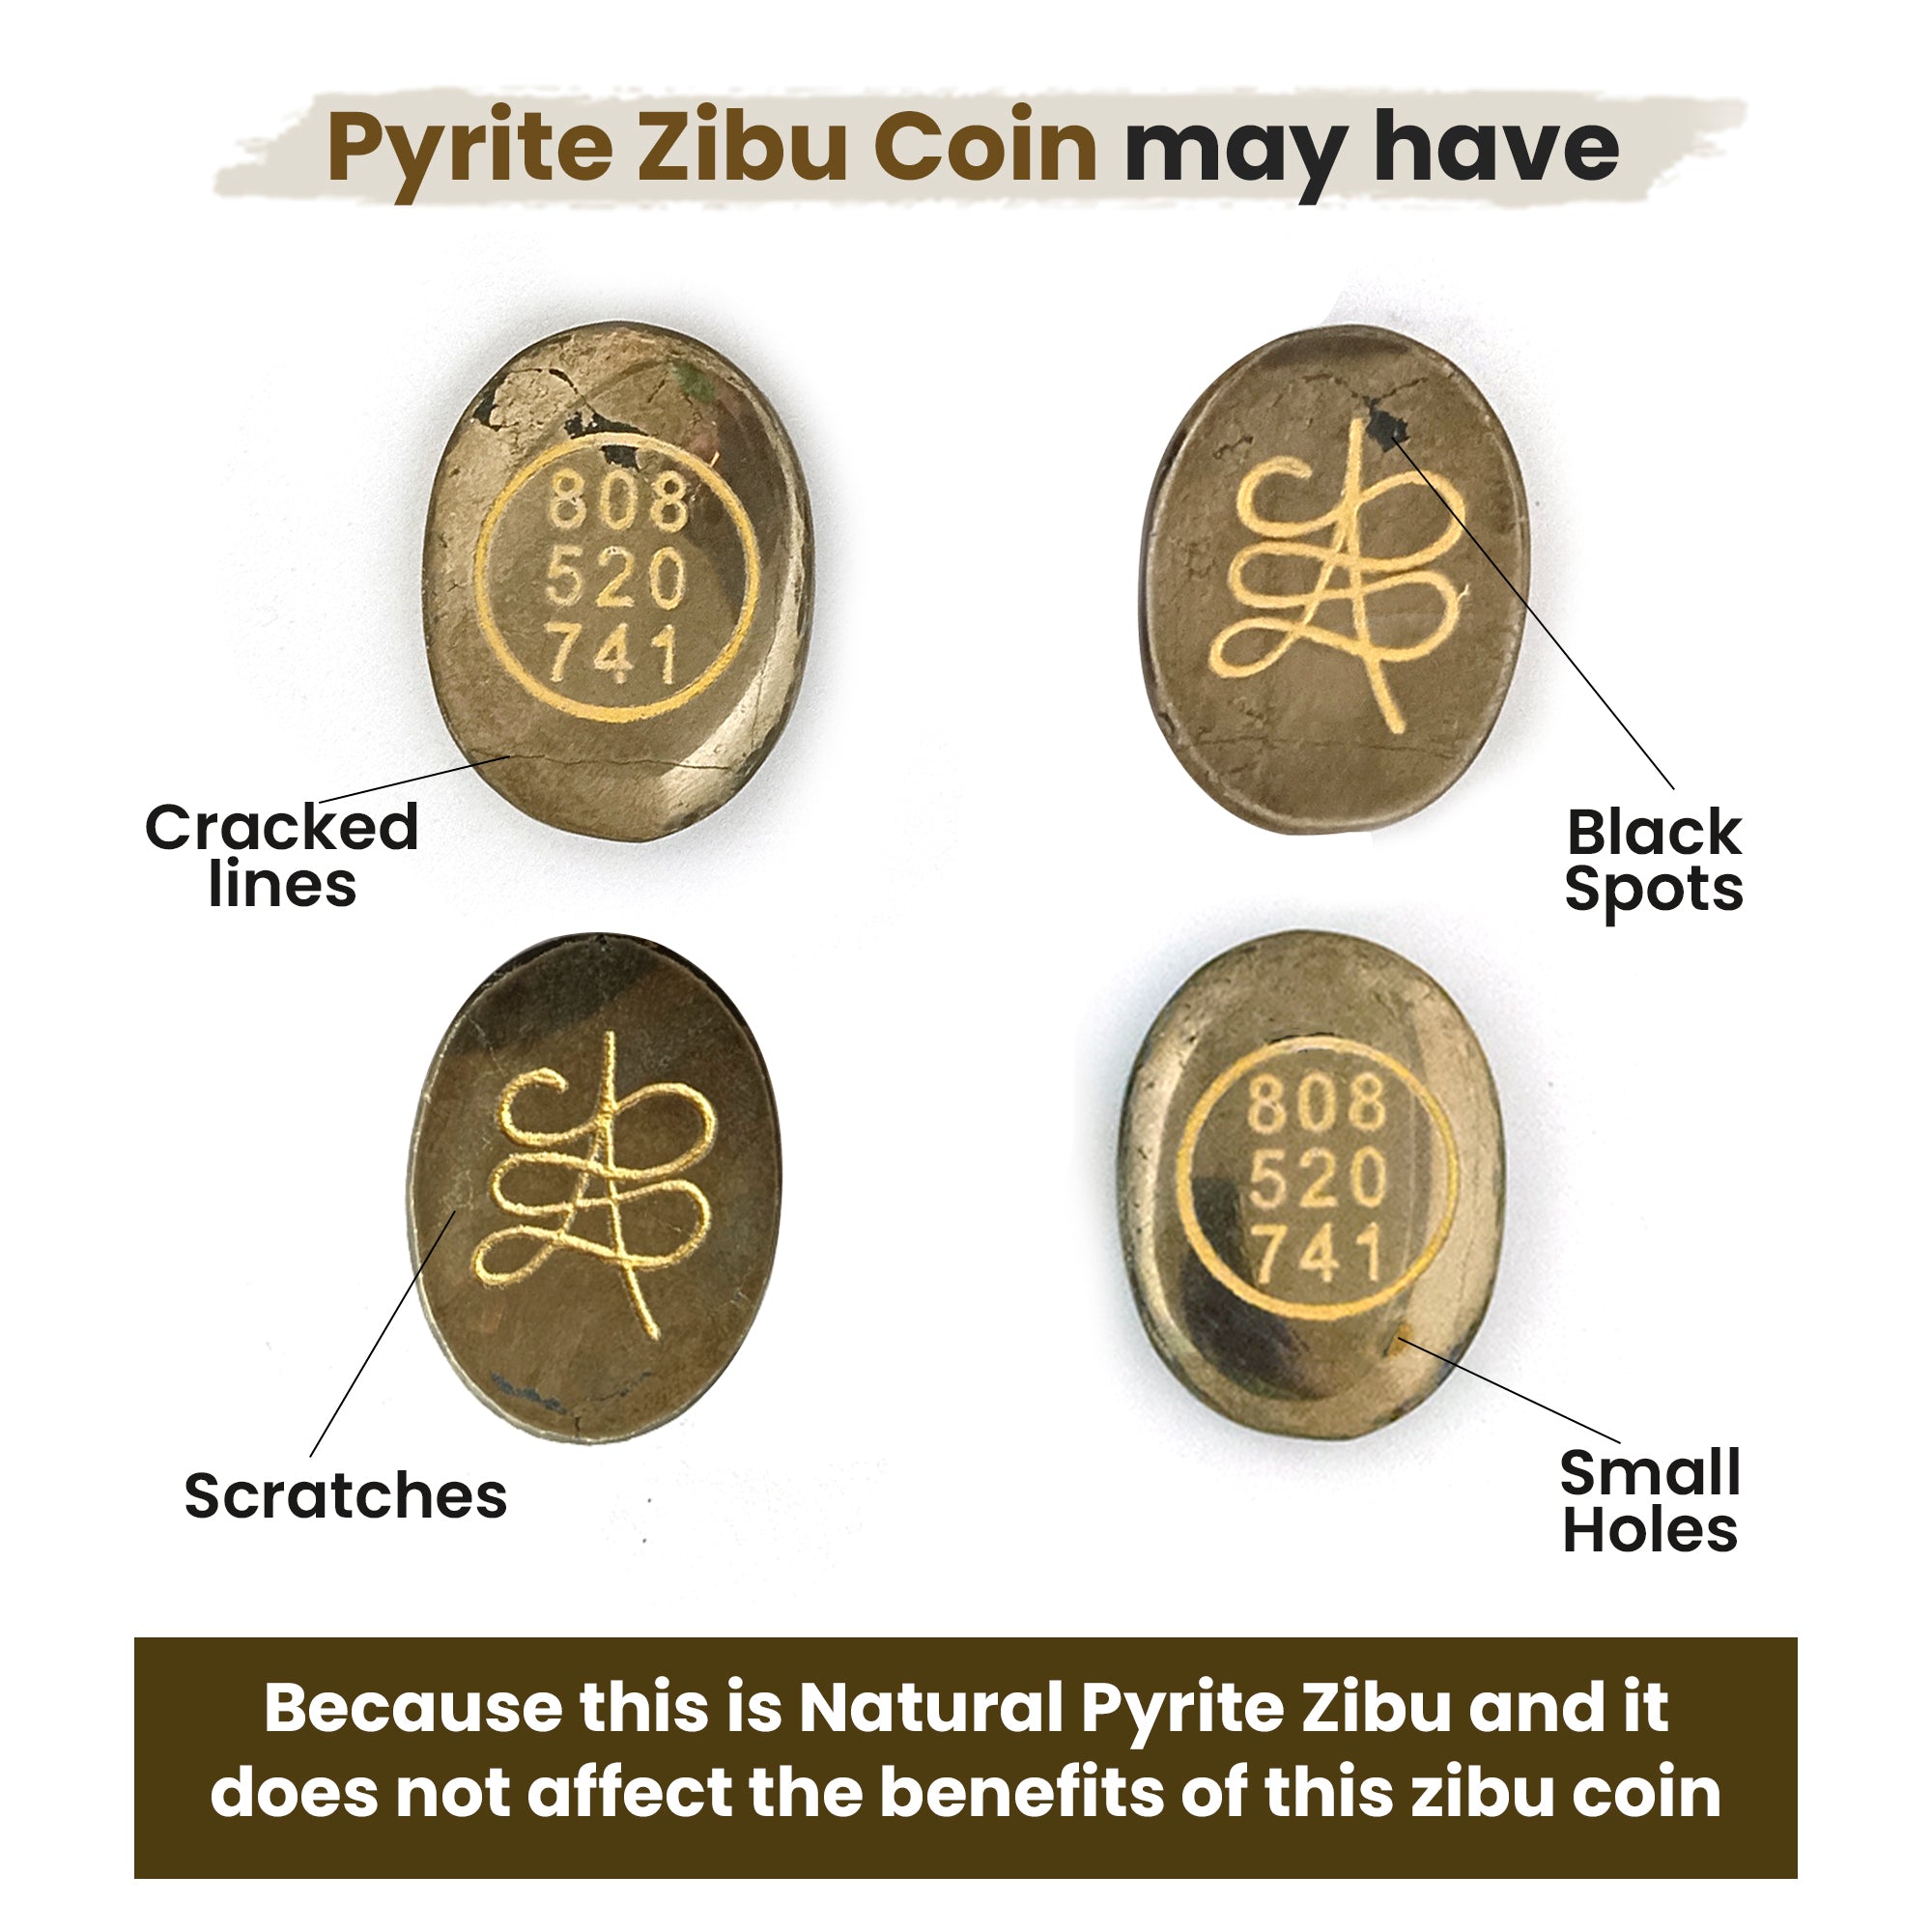 Original Pyrite Zibu Coin